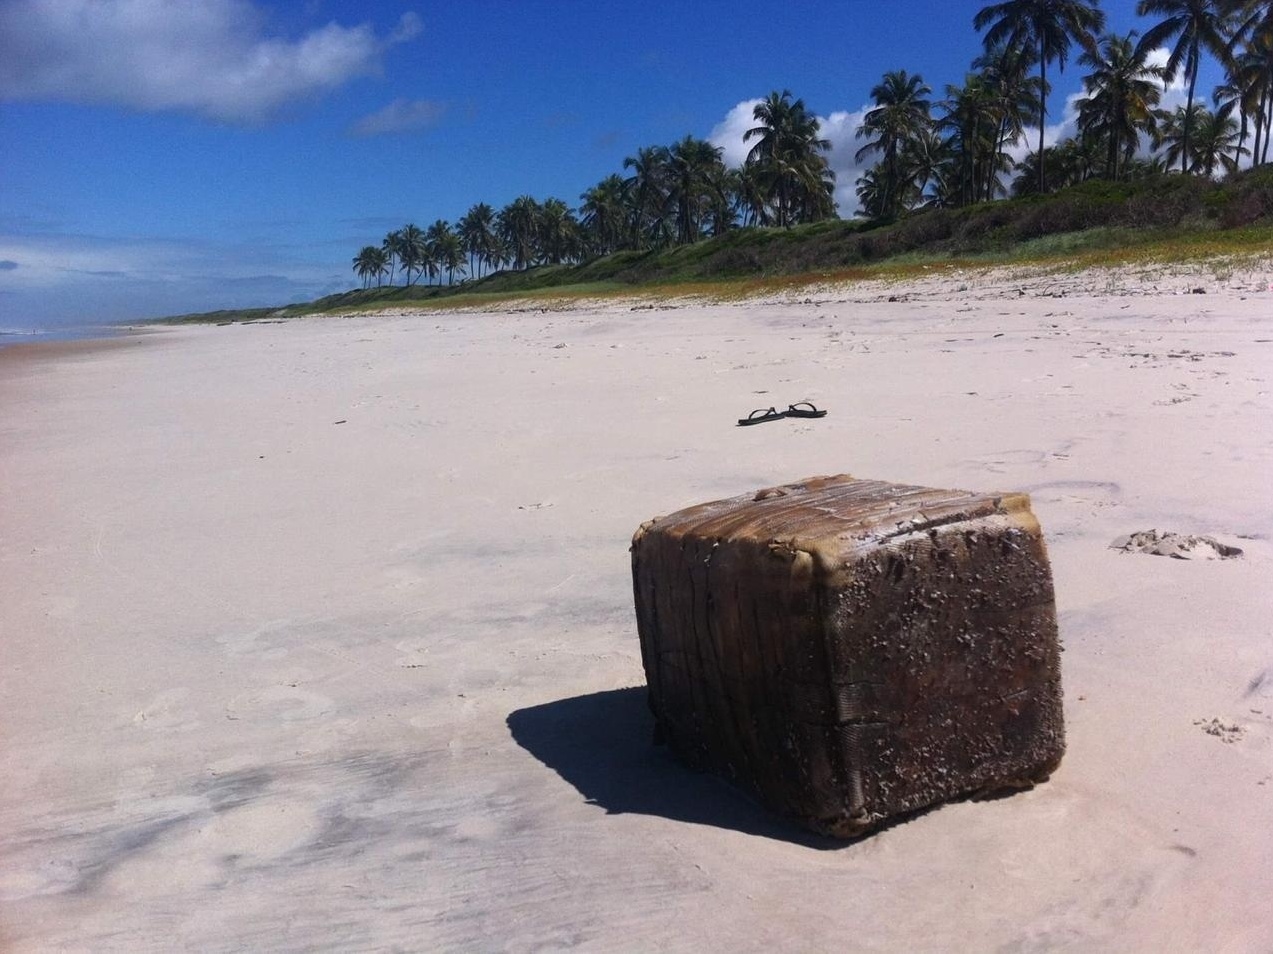 Caixas misteriosas encalham em praias no NE e causam acidente com 2 mortos  - 12/06/2019 - UOL Notícias